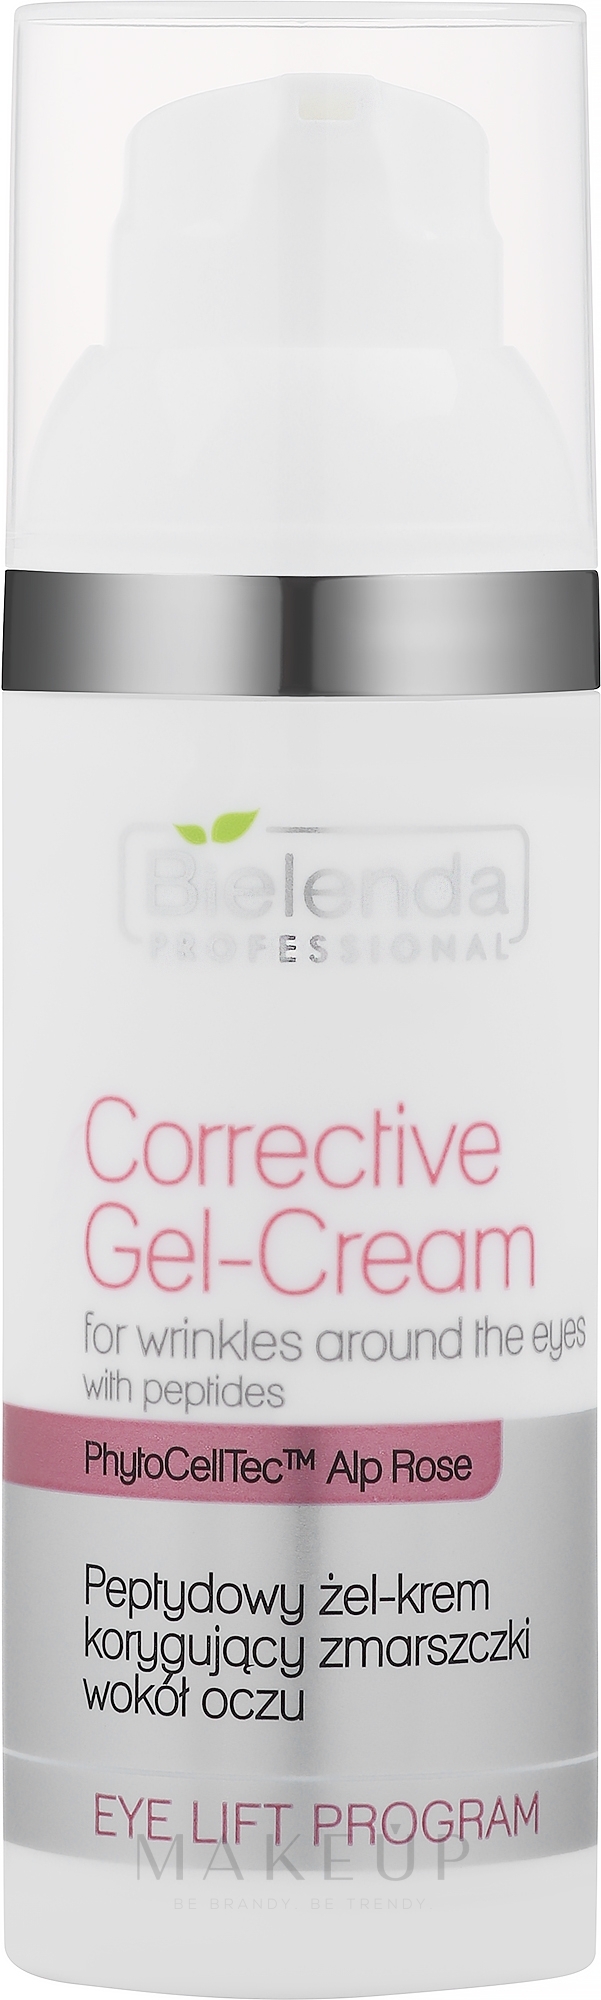 Korrigierende Gesichtsgel-Creme mit Peptiden für die Augenpartie - Bielenda Professional Eye Lift Program Corrective Gel-Cream — Bild 50 ml